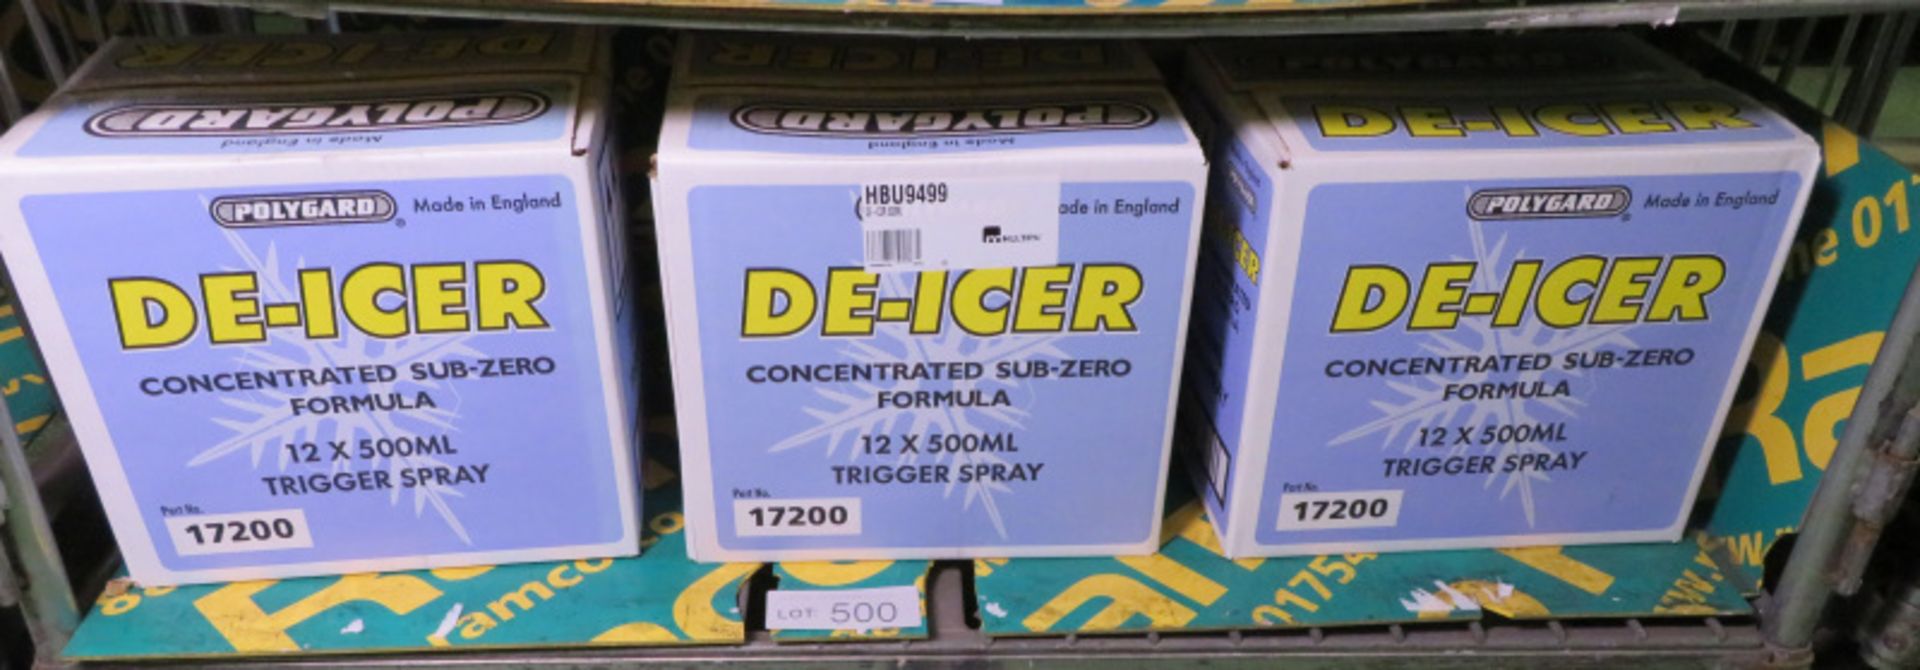 Polygard De-Icer - 3x Boxes - 12x 500ml spray bottles per box